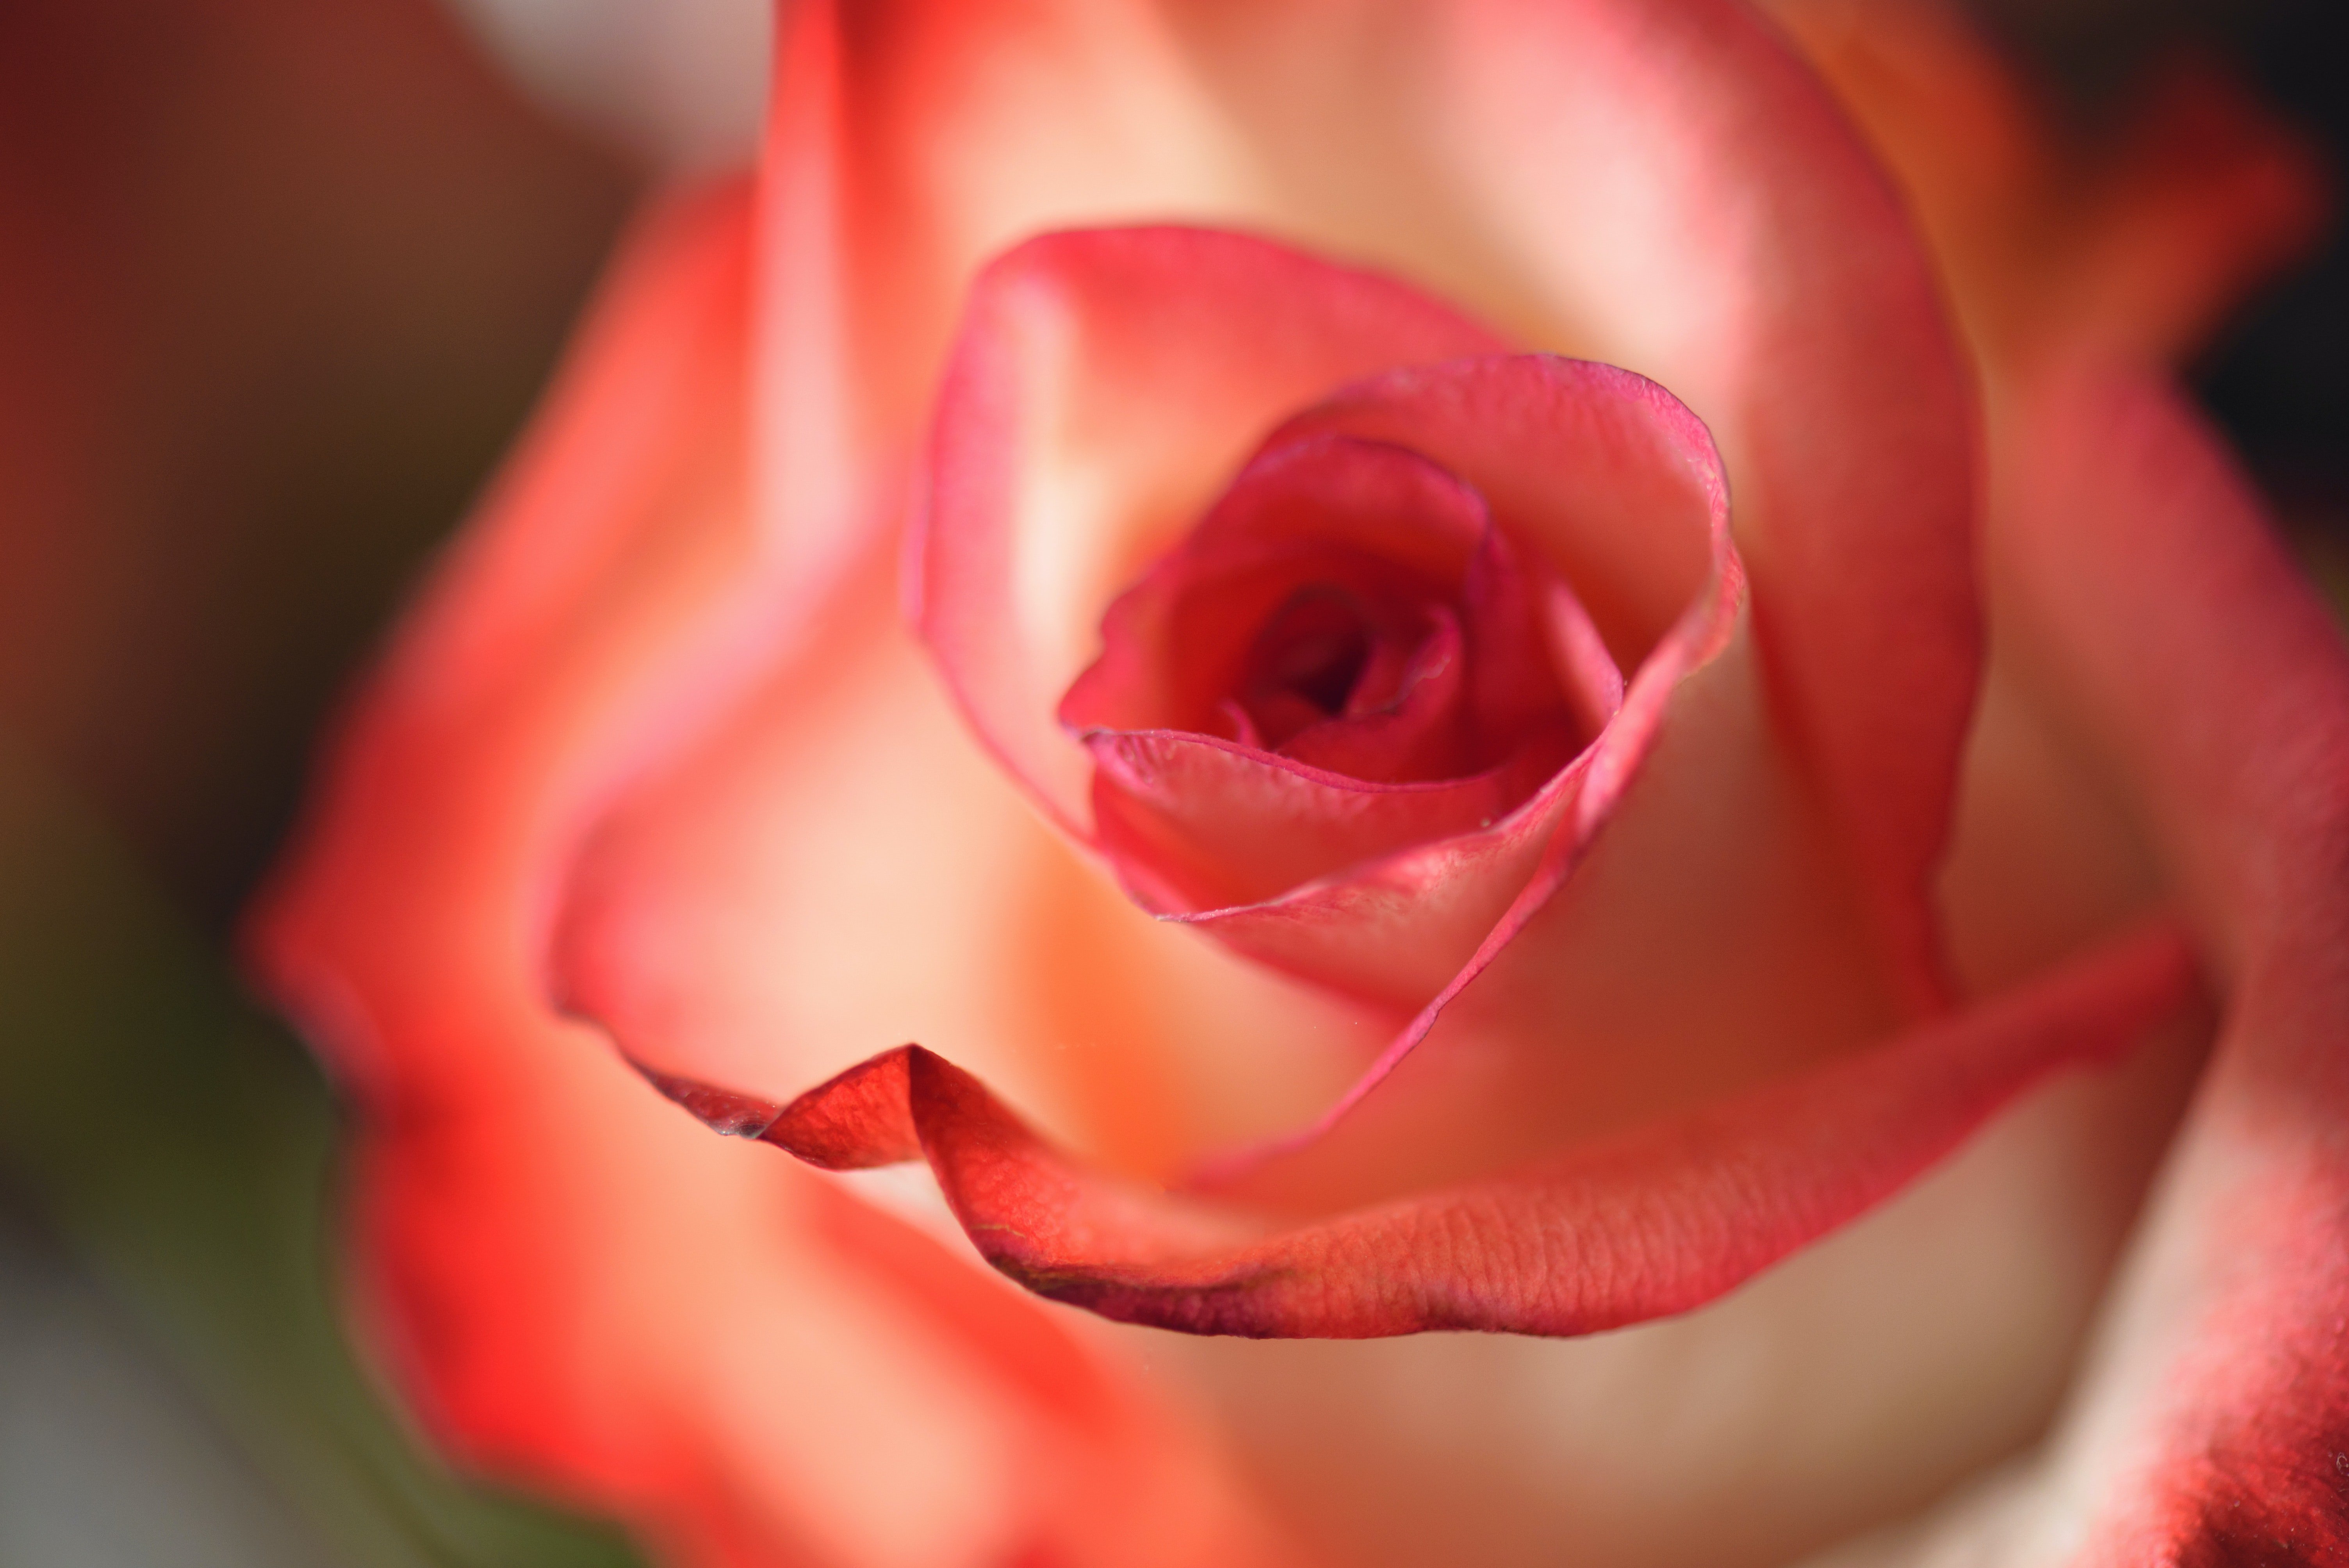 Mia était déçue que sa grand-mère ait choisi de lui offrir une rose le jour de son mariage. | Source : Pexels